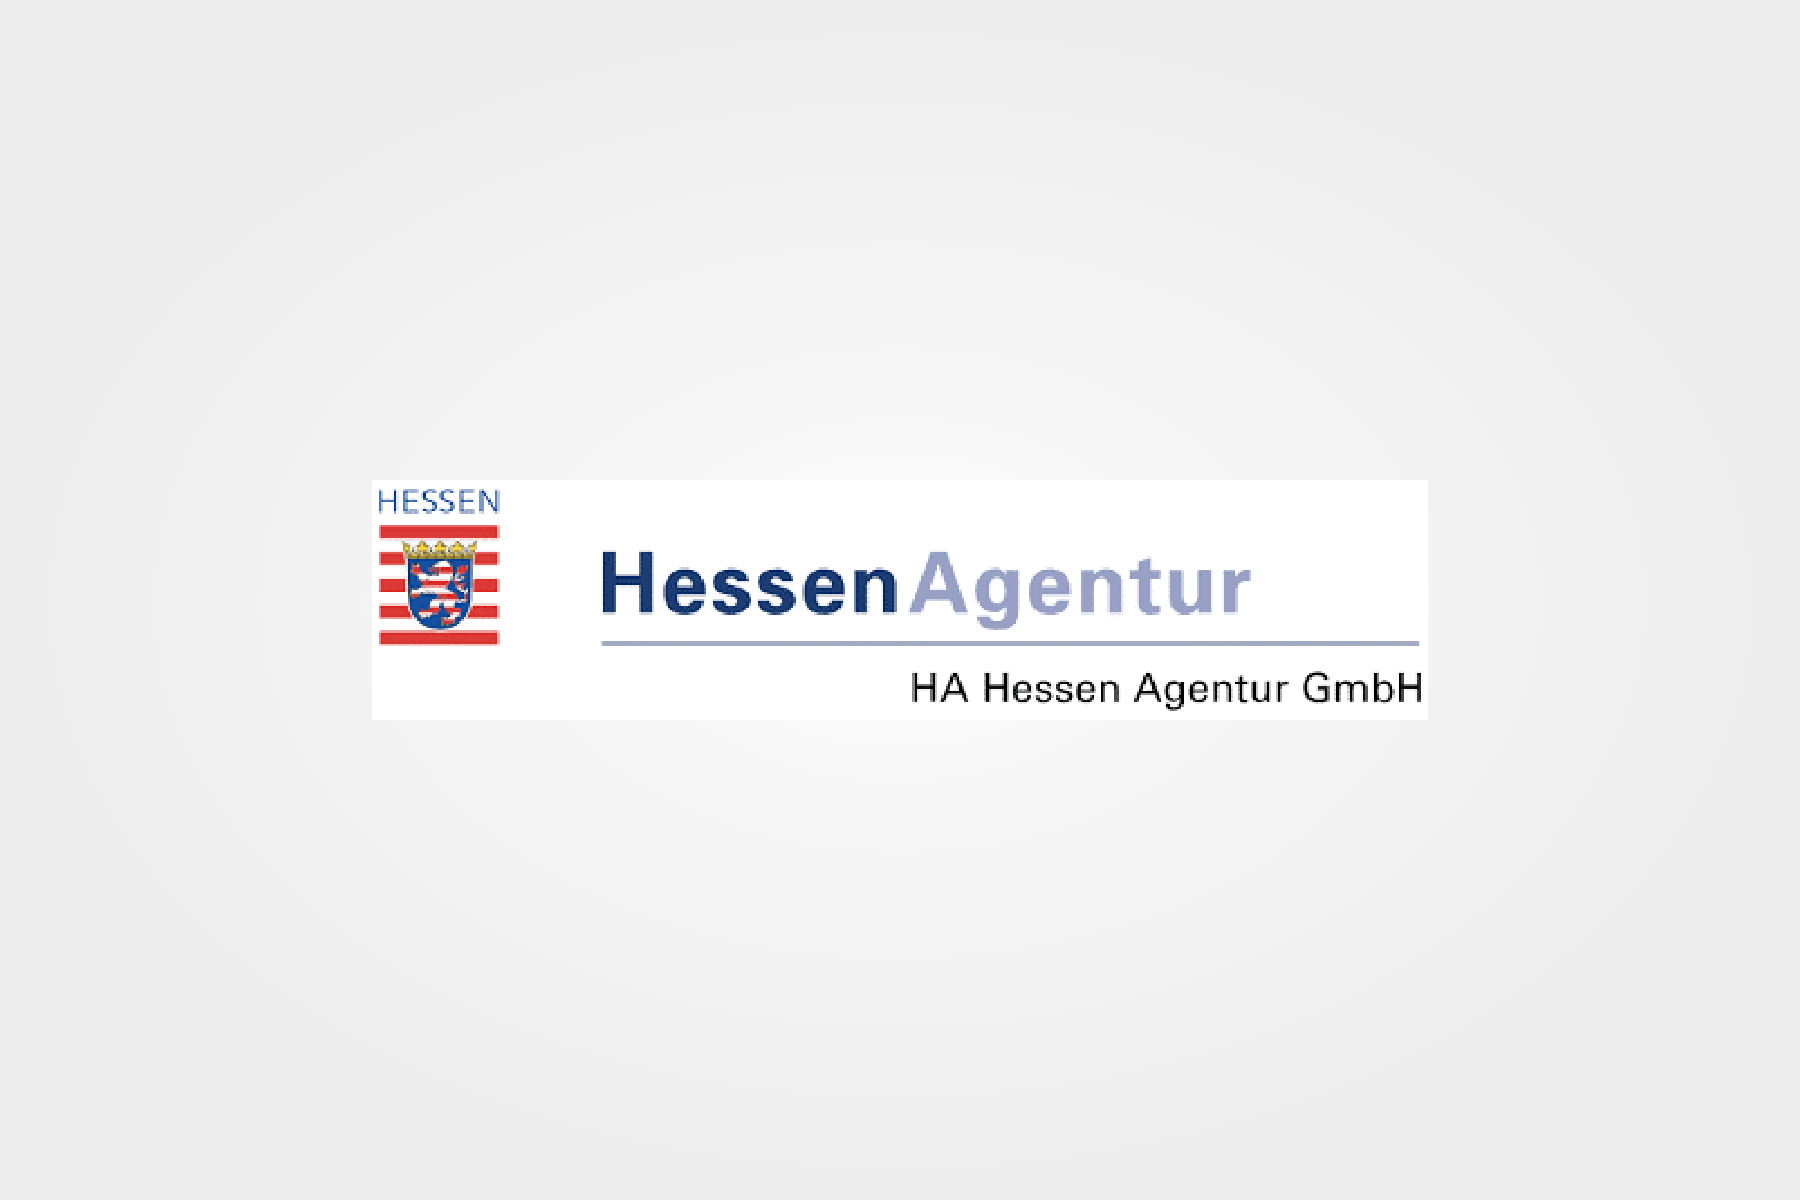 Hessen Agentur